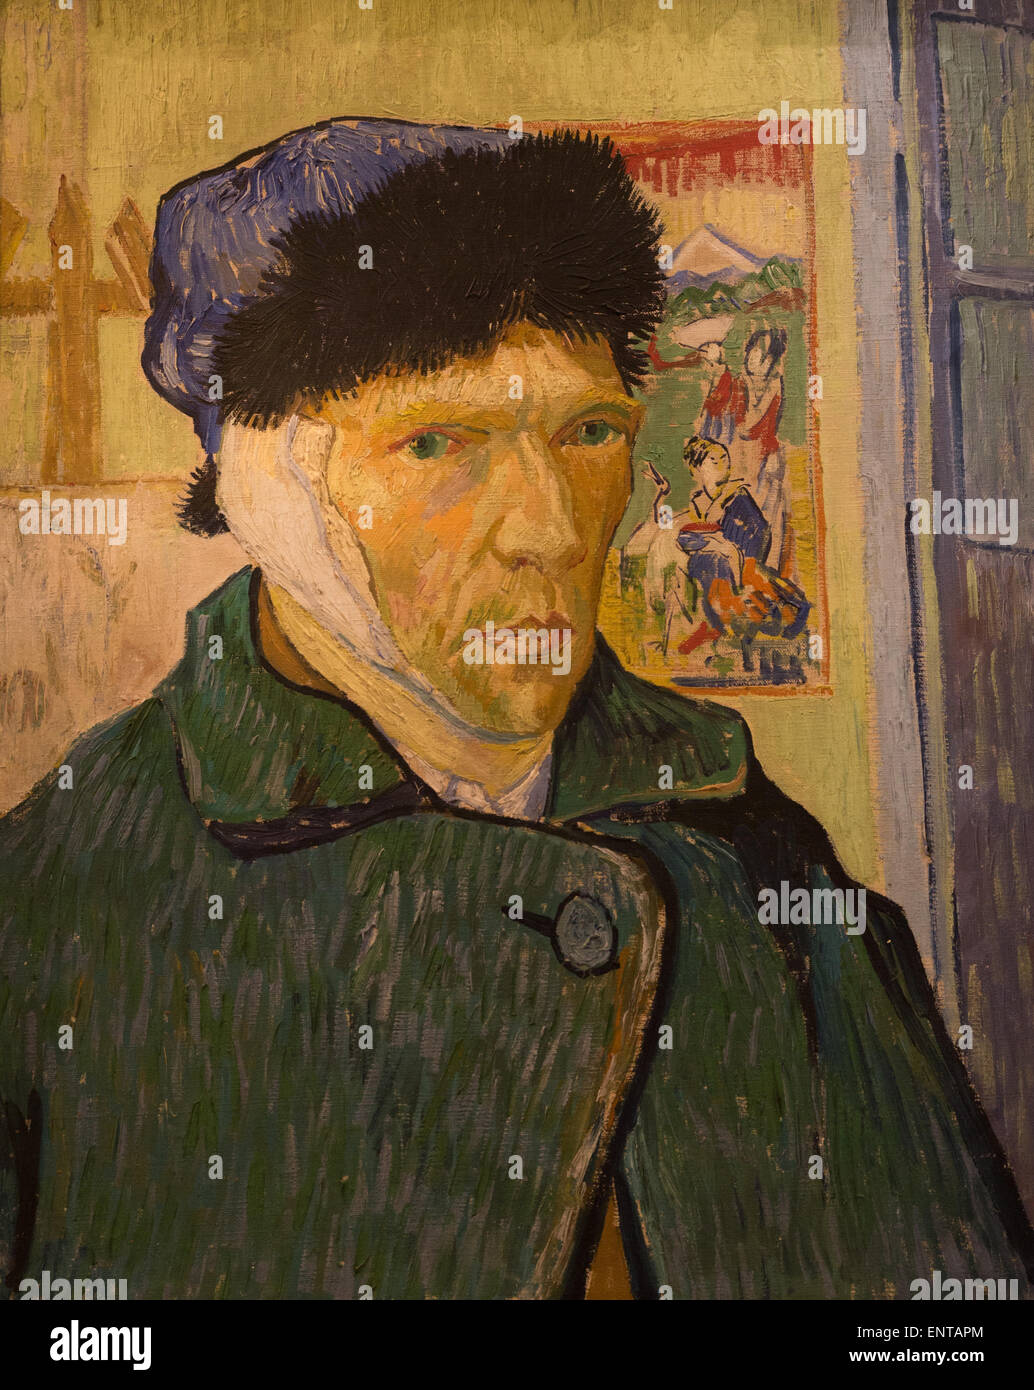 ActiveMuseum 0006332.jpg / Autoritratto con un orecchio bendato Paul Gauguin uniti van Gogh nella città di Arles nel novembre 1888 per dipingere insieme in quanto van Gogh chiamato 'studio del Sud', ma hanno rapidamente iniziato a litigare. Dopo un vizioso argomento, van Gogh mutilate il suo orecchio sinistro. Questo autoritratto è stato uno dei primi lavori di Van Gogh dipinto dopo questo incidente. 22/01/2014 - / xix secolo Collezione / Museo attivo Foto Stock